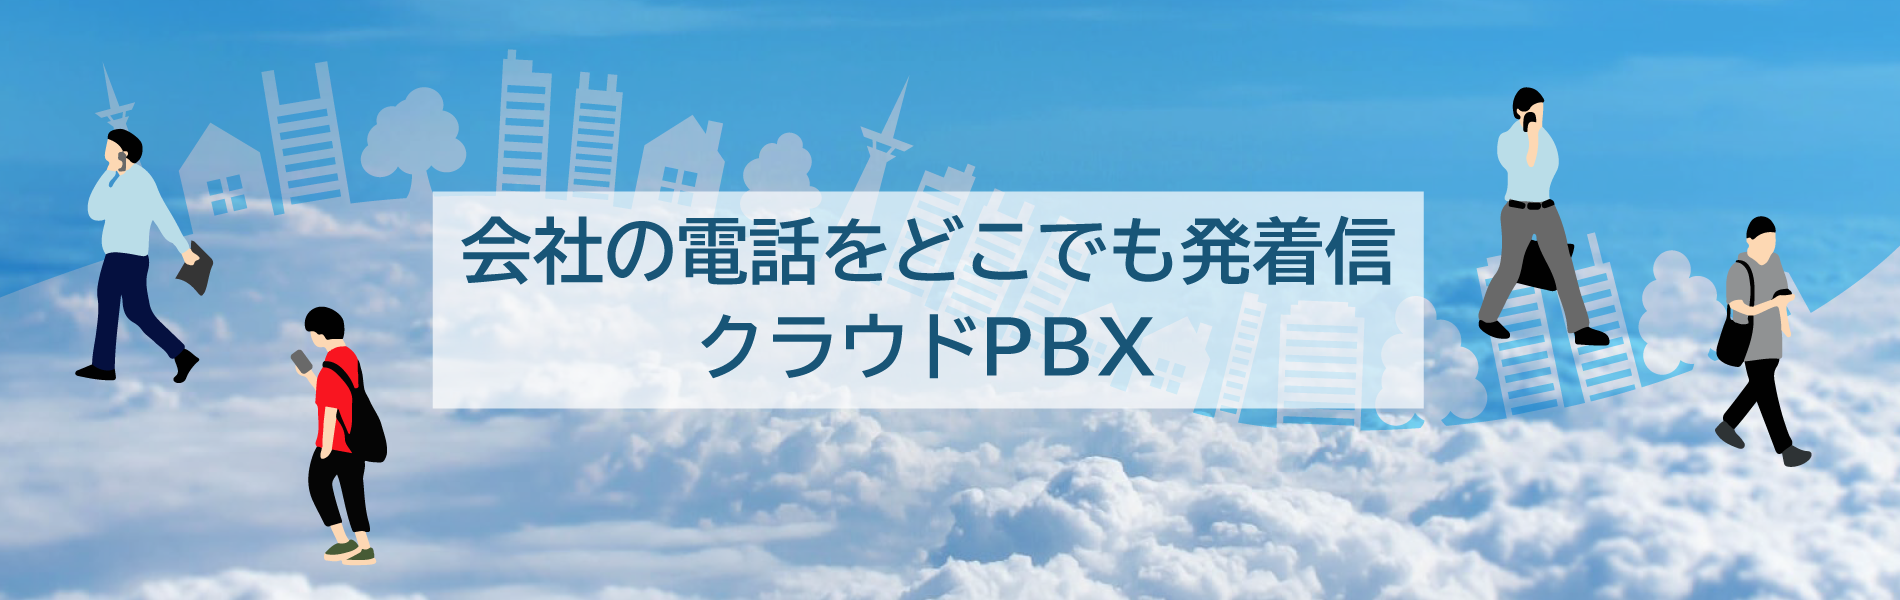 CloudPBX